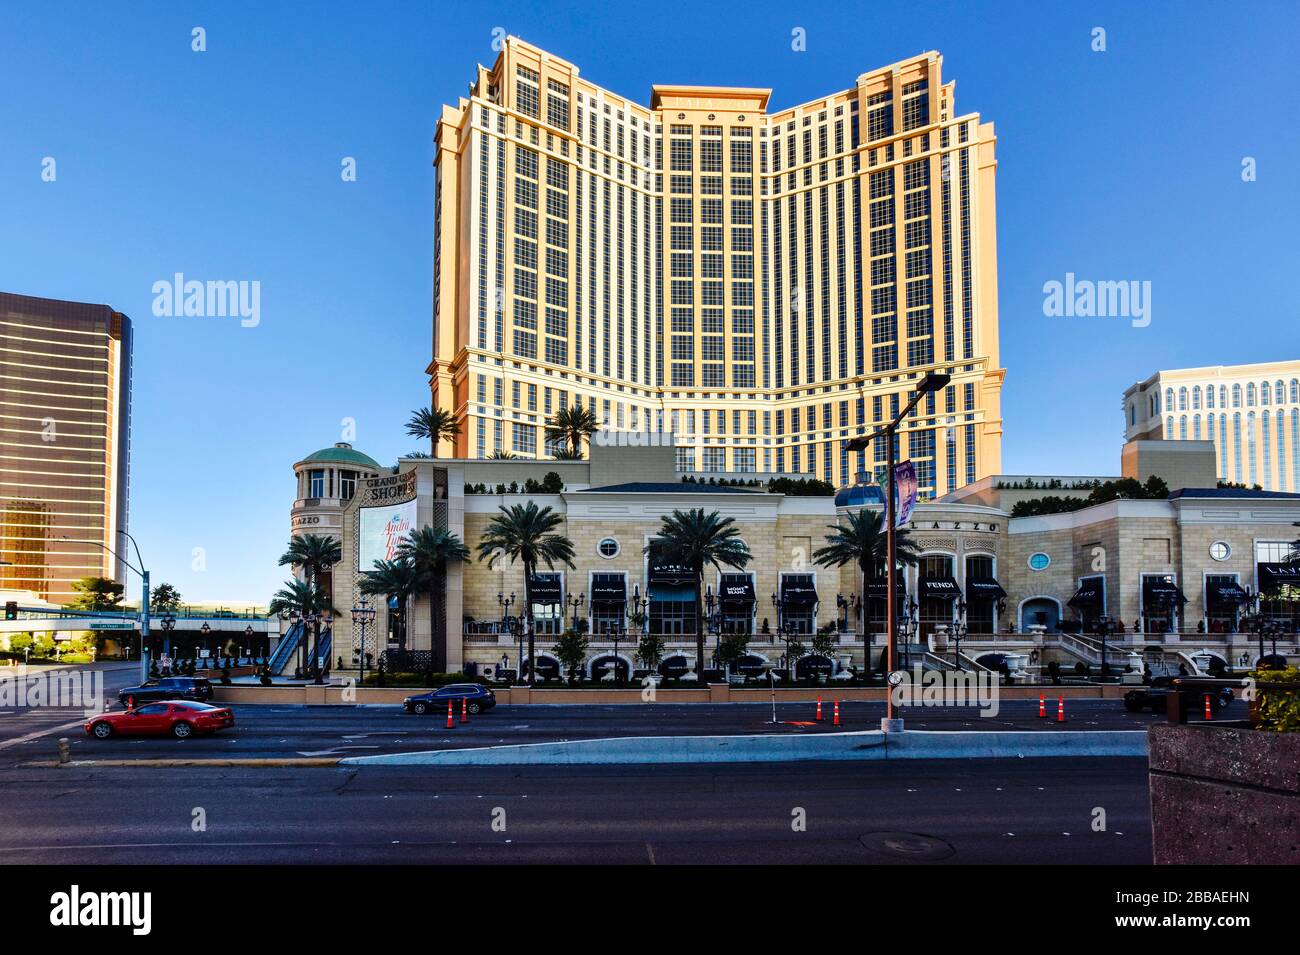 Una settimana nella Las Vegas chiusa a causa di Coronavirus, la Strip è abbastanza vuota. Non c'è gente per le strade e tutto è chiuso. Foto Stock